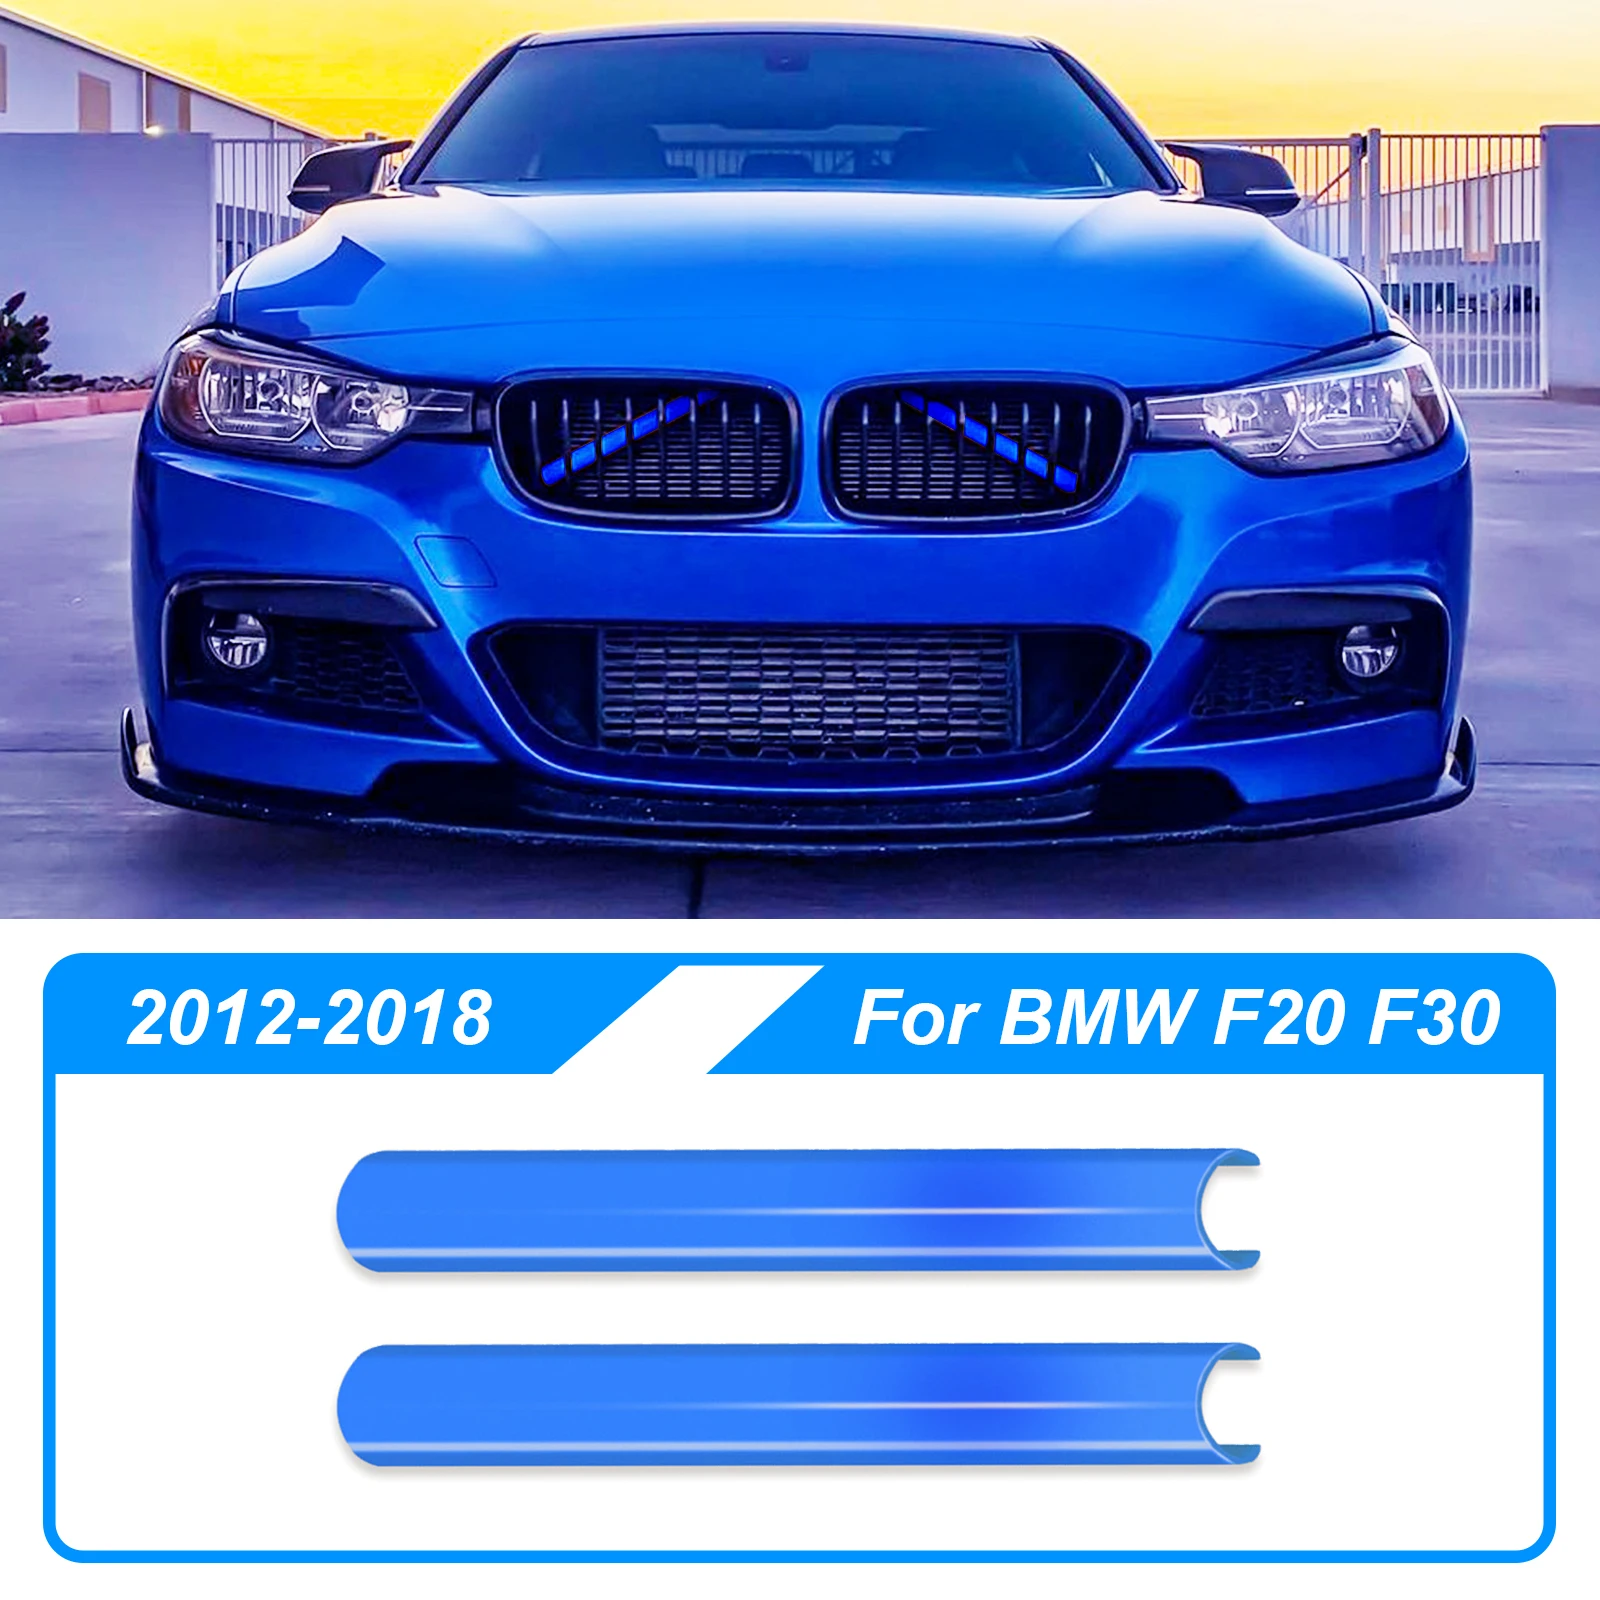 

Полоски для отделки передней решетки радиатора для BMW F30, F32, 3, 4 серии, синие полосы для отделки радиатора в спортивном стиле, Обложка рамы, украшения для автомобиля, наклейки